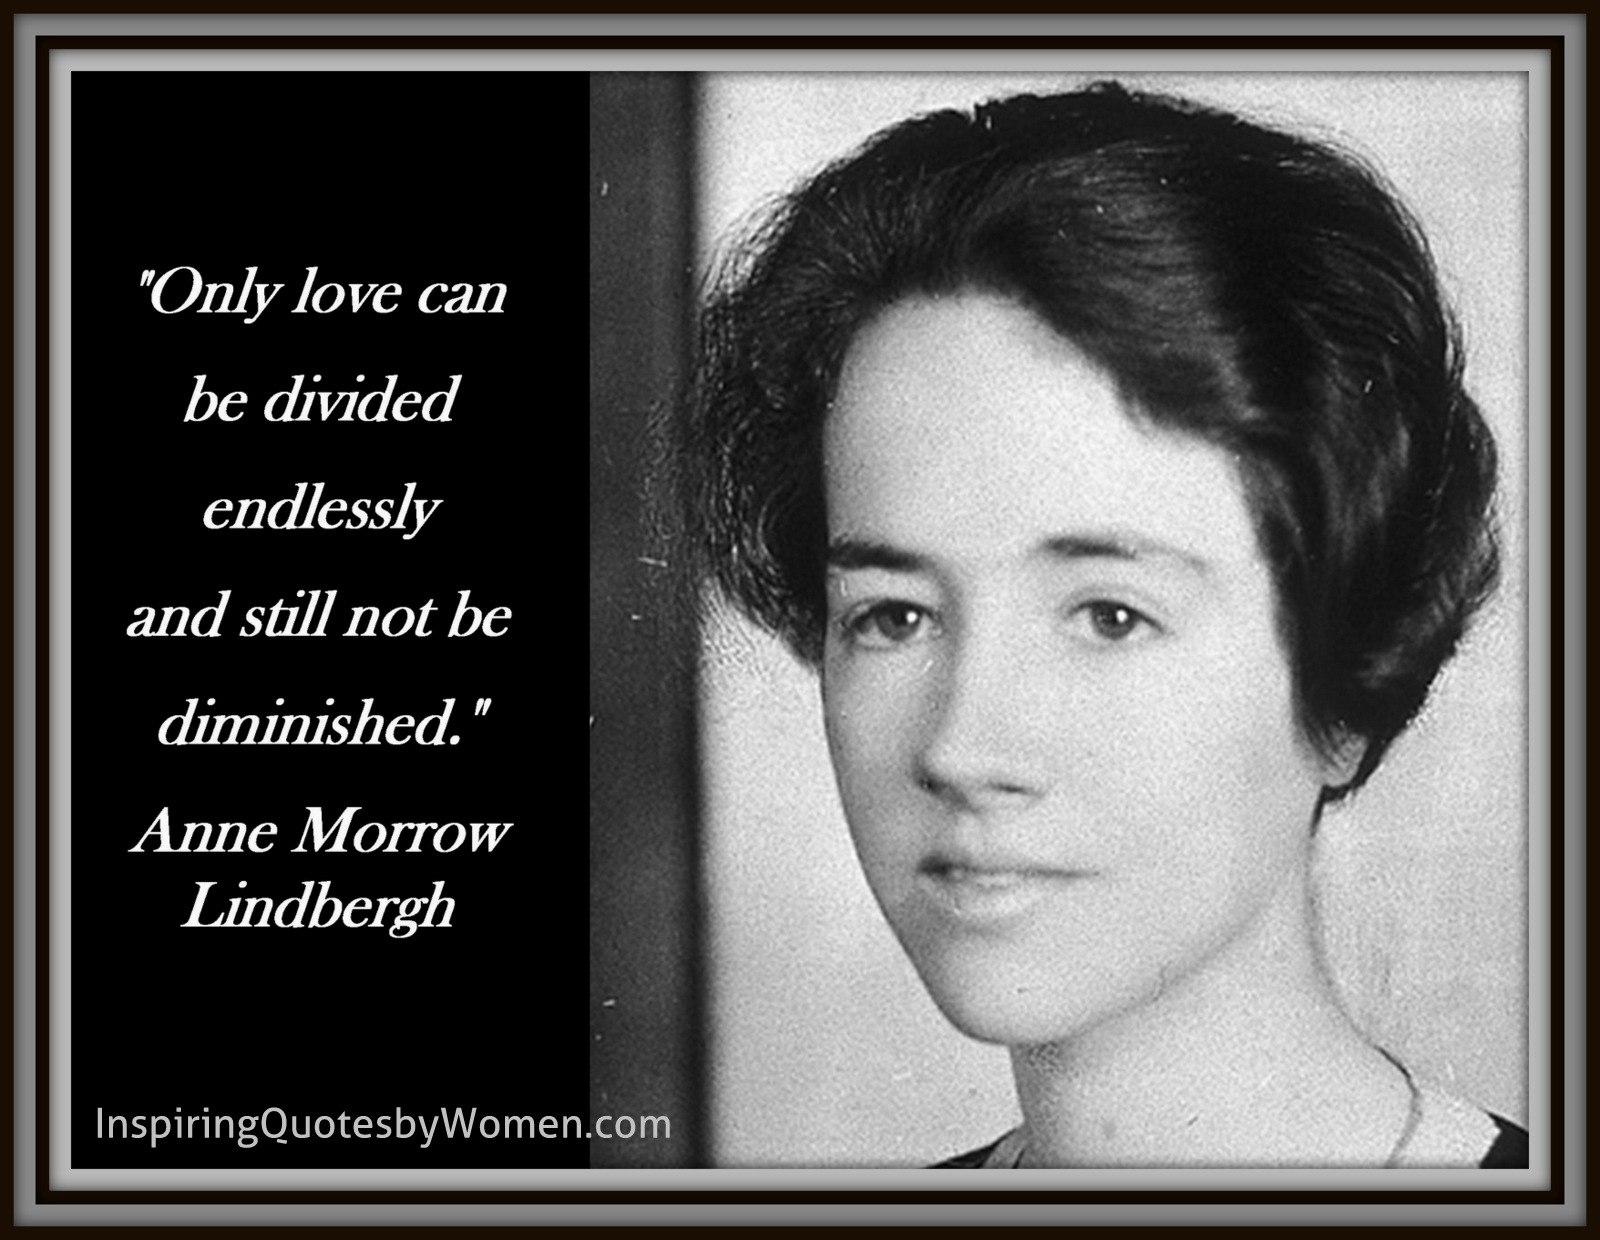 Anne Morrow Lindbergh - anne-moorow-lindbergh-jpg